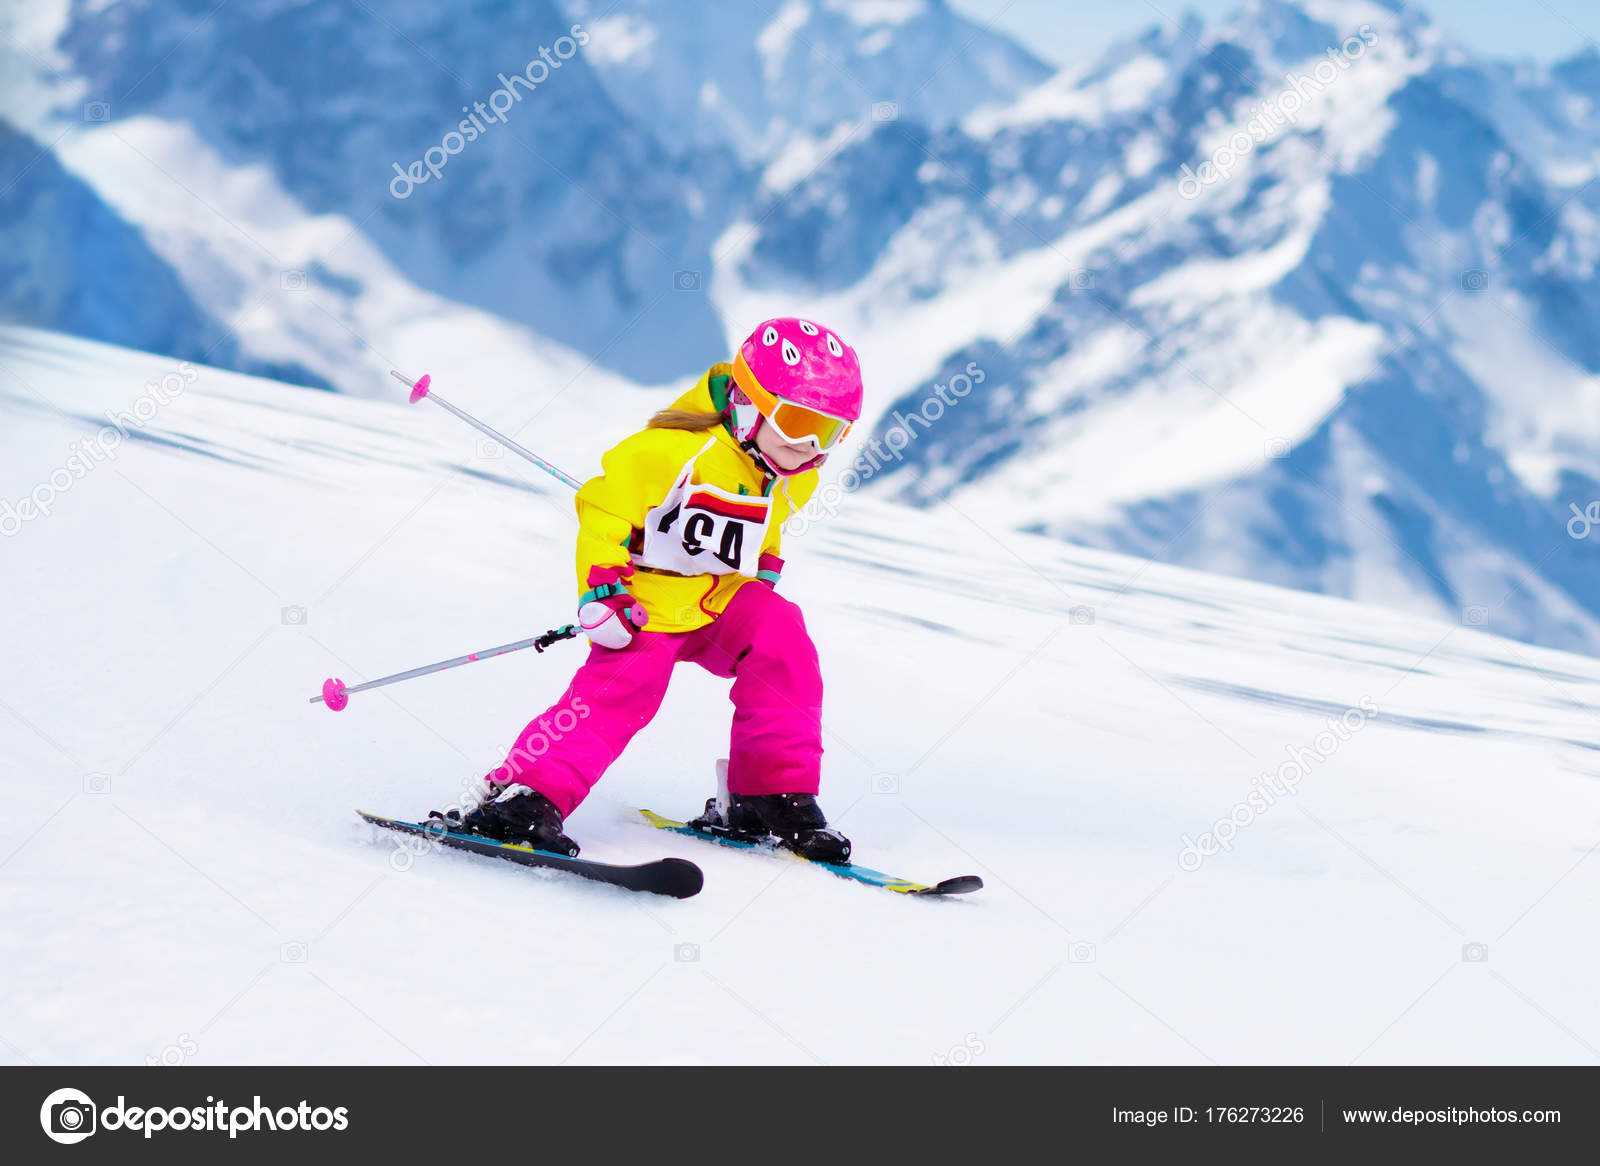 Увлекается катанием на лыжах. Горнолыжный спорт дети. Горные лыжи спорт дети. Маленькие дети на горных лыжах. Зимний спорт для детей лыжи.